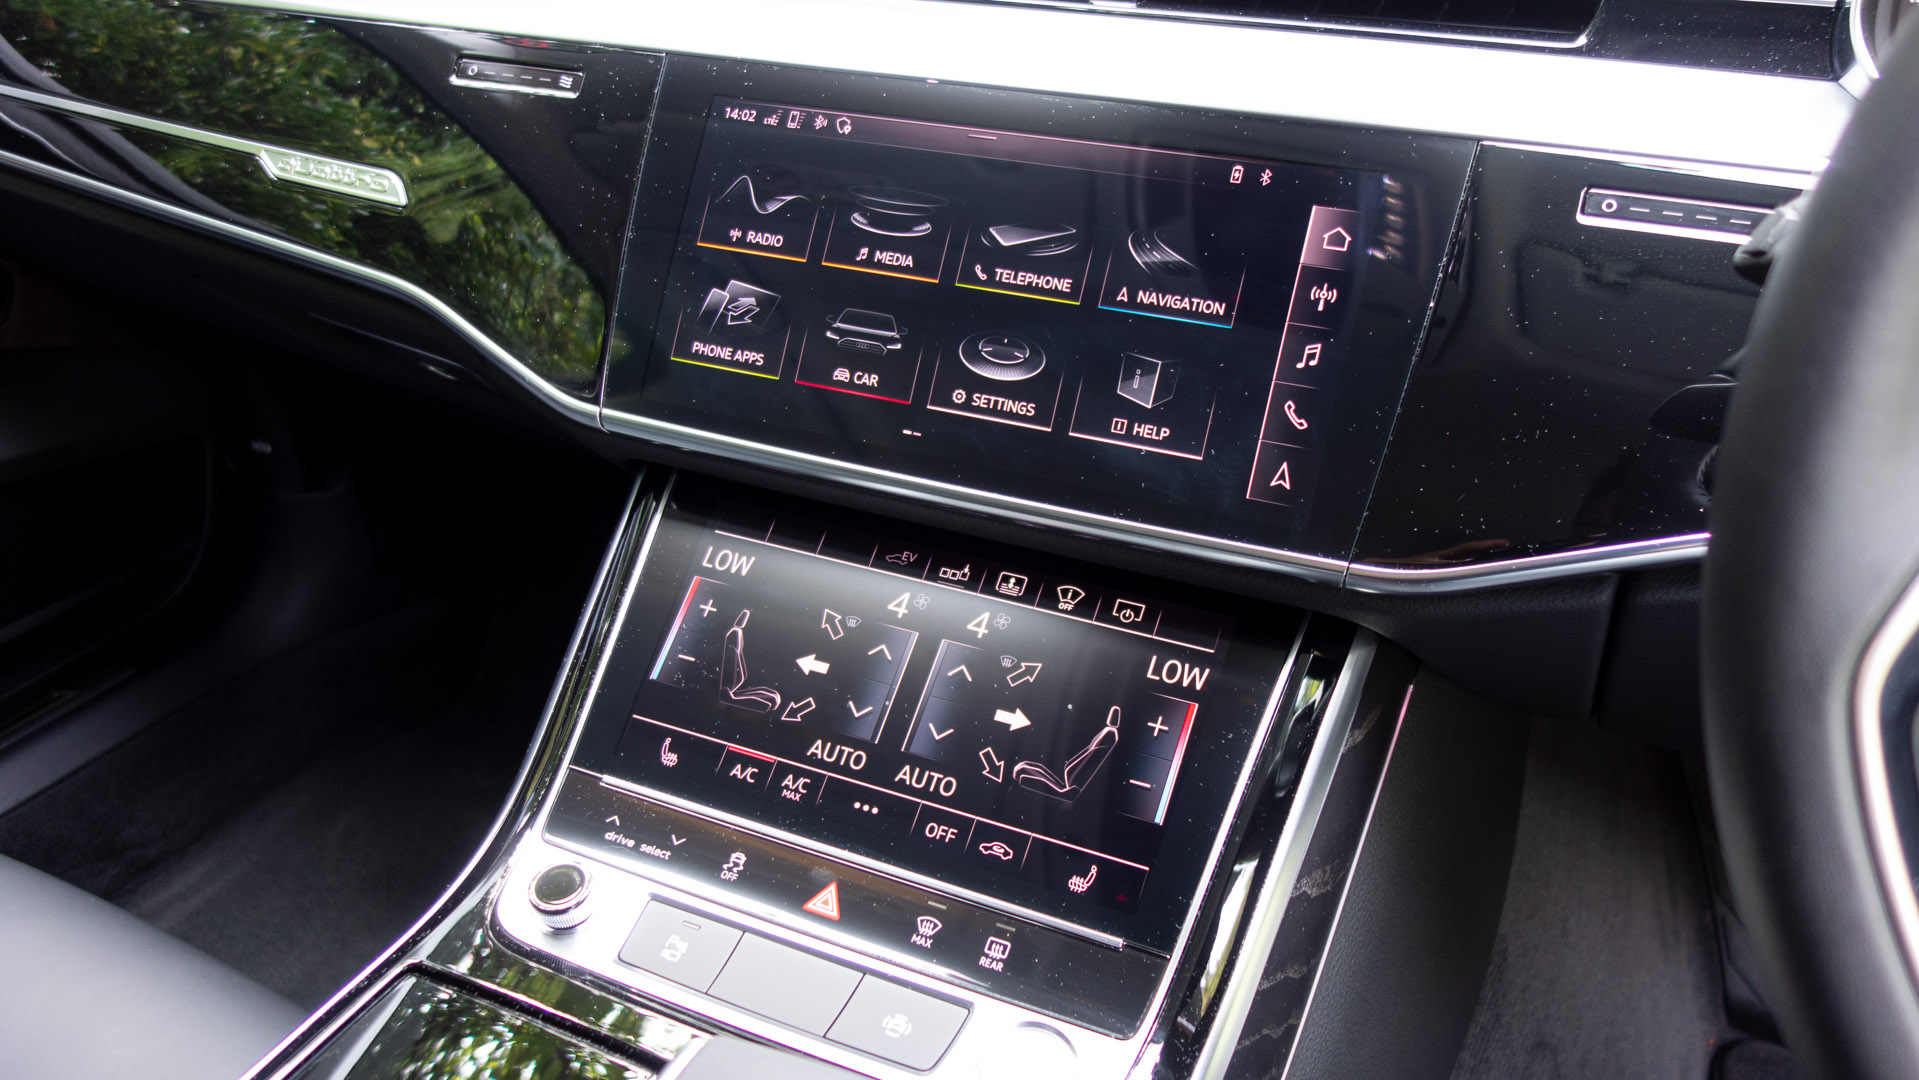 Audi A8 screens